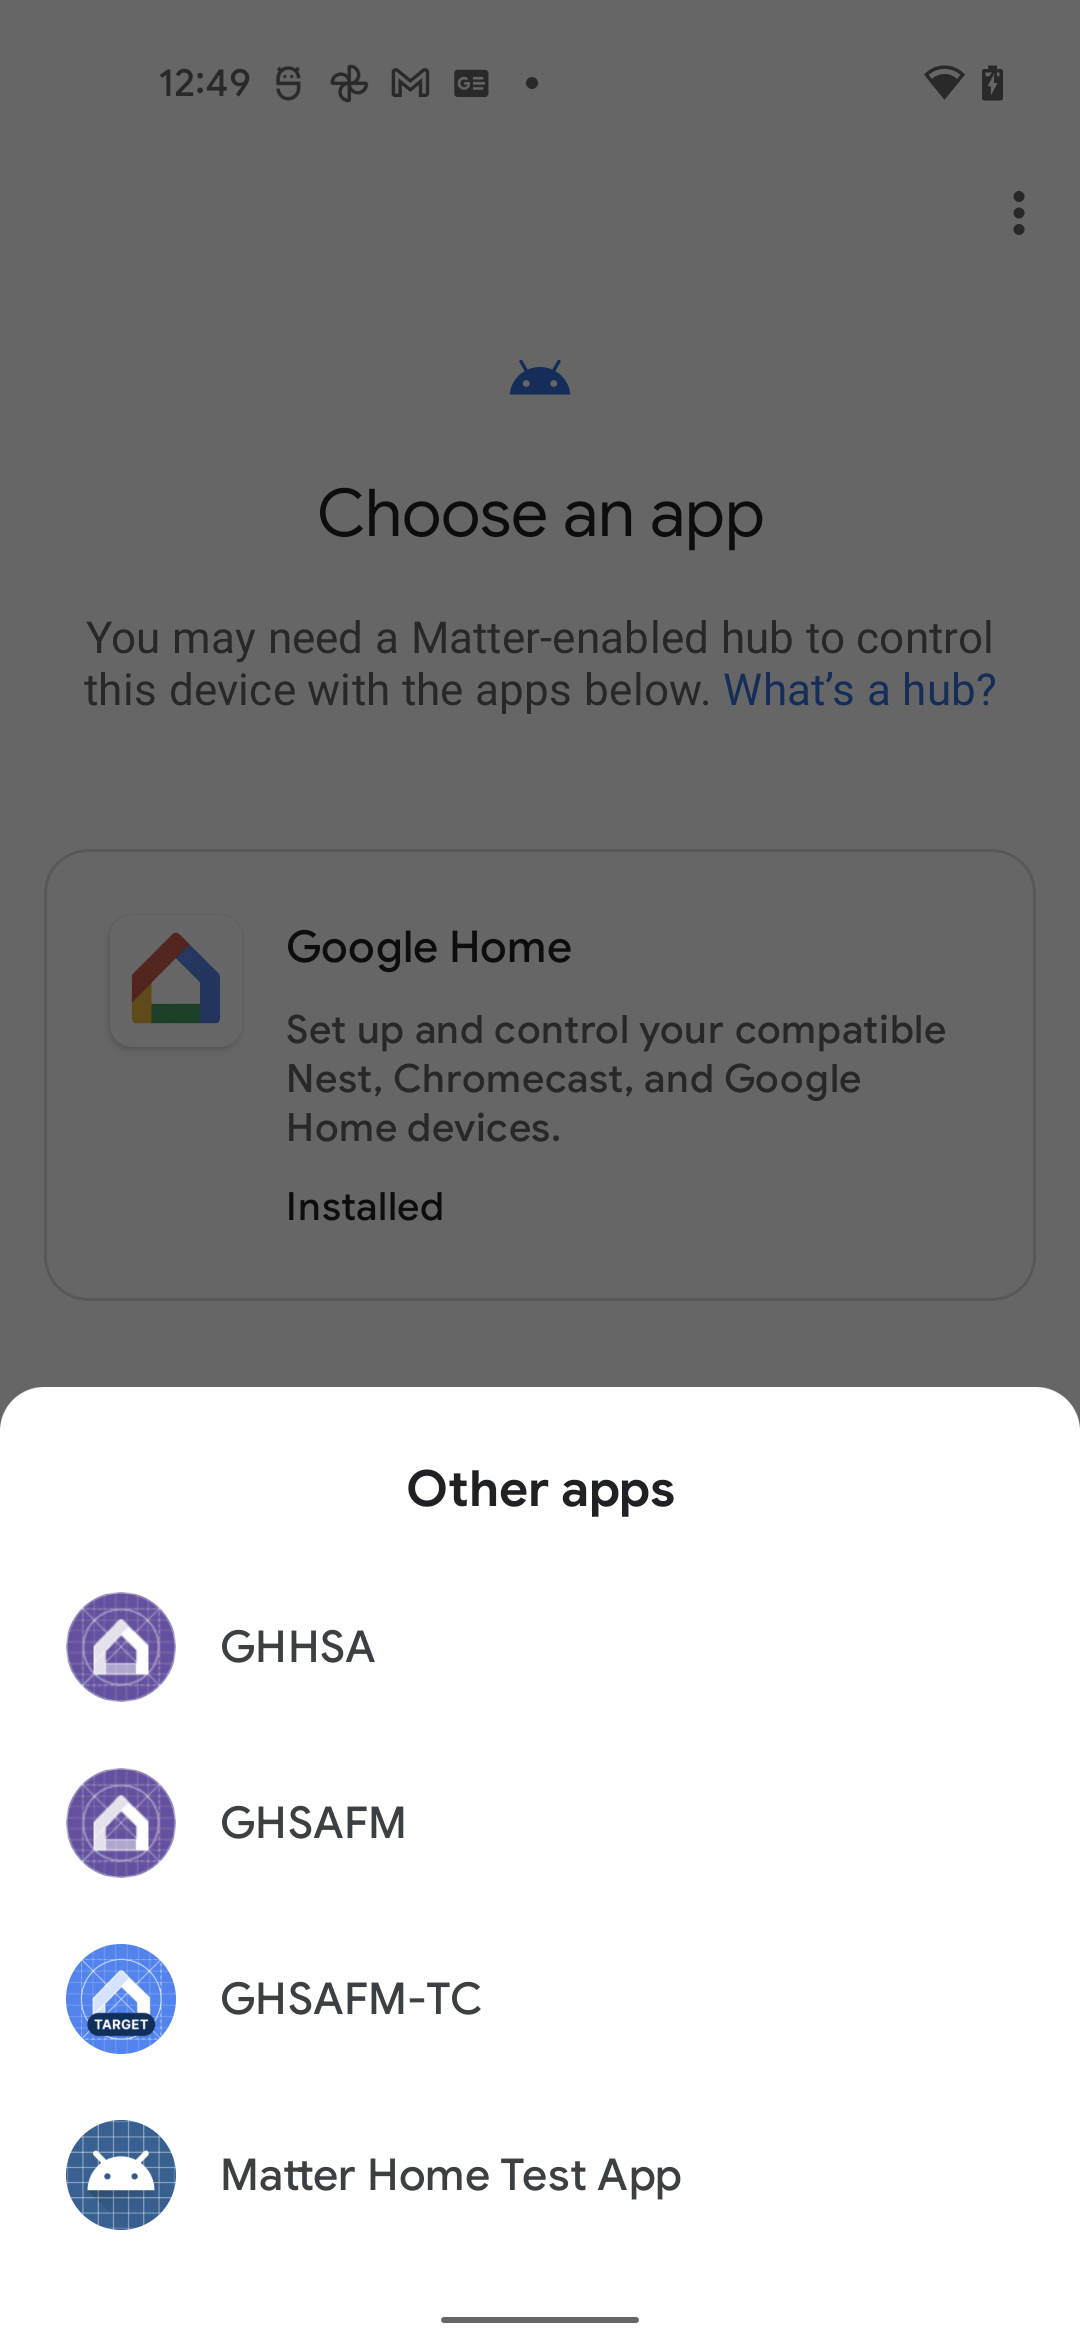 Escolher um app: outros apps